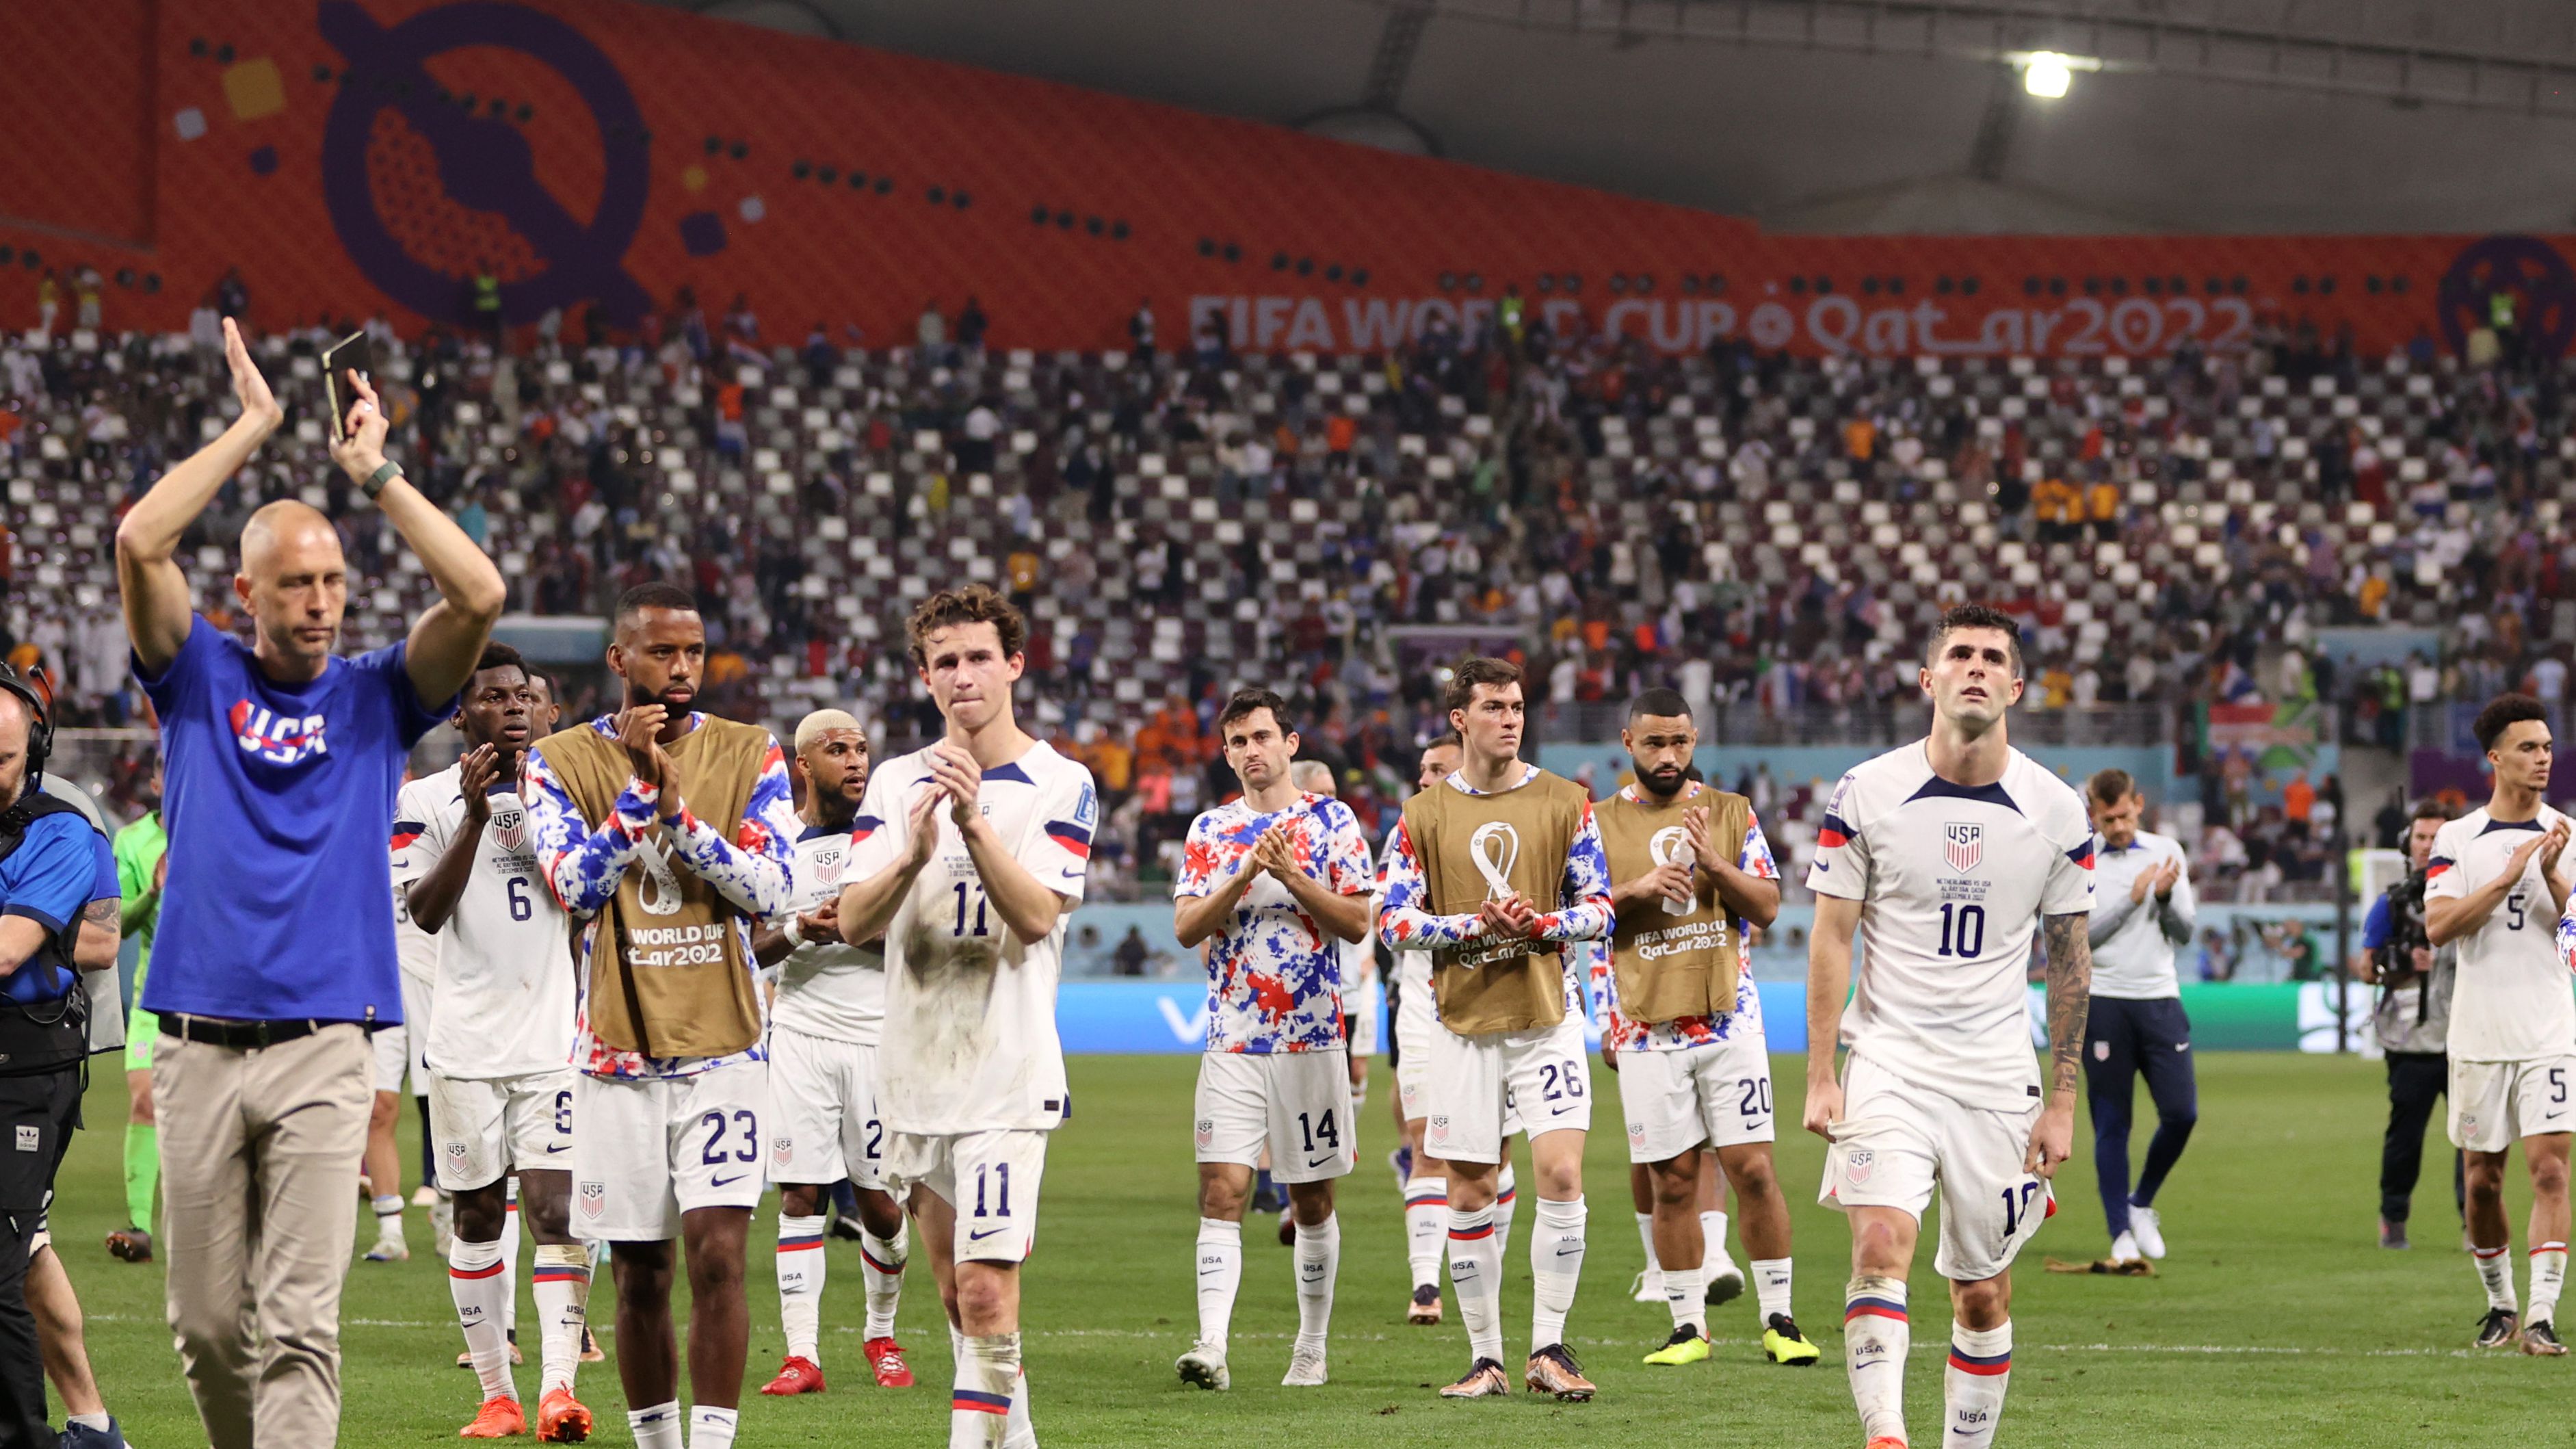 Equipe dos Estados Unidos agradecendo a torcida após o final do jogo (Crédito: Getty Images)